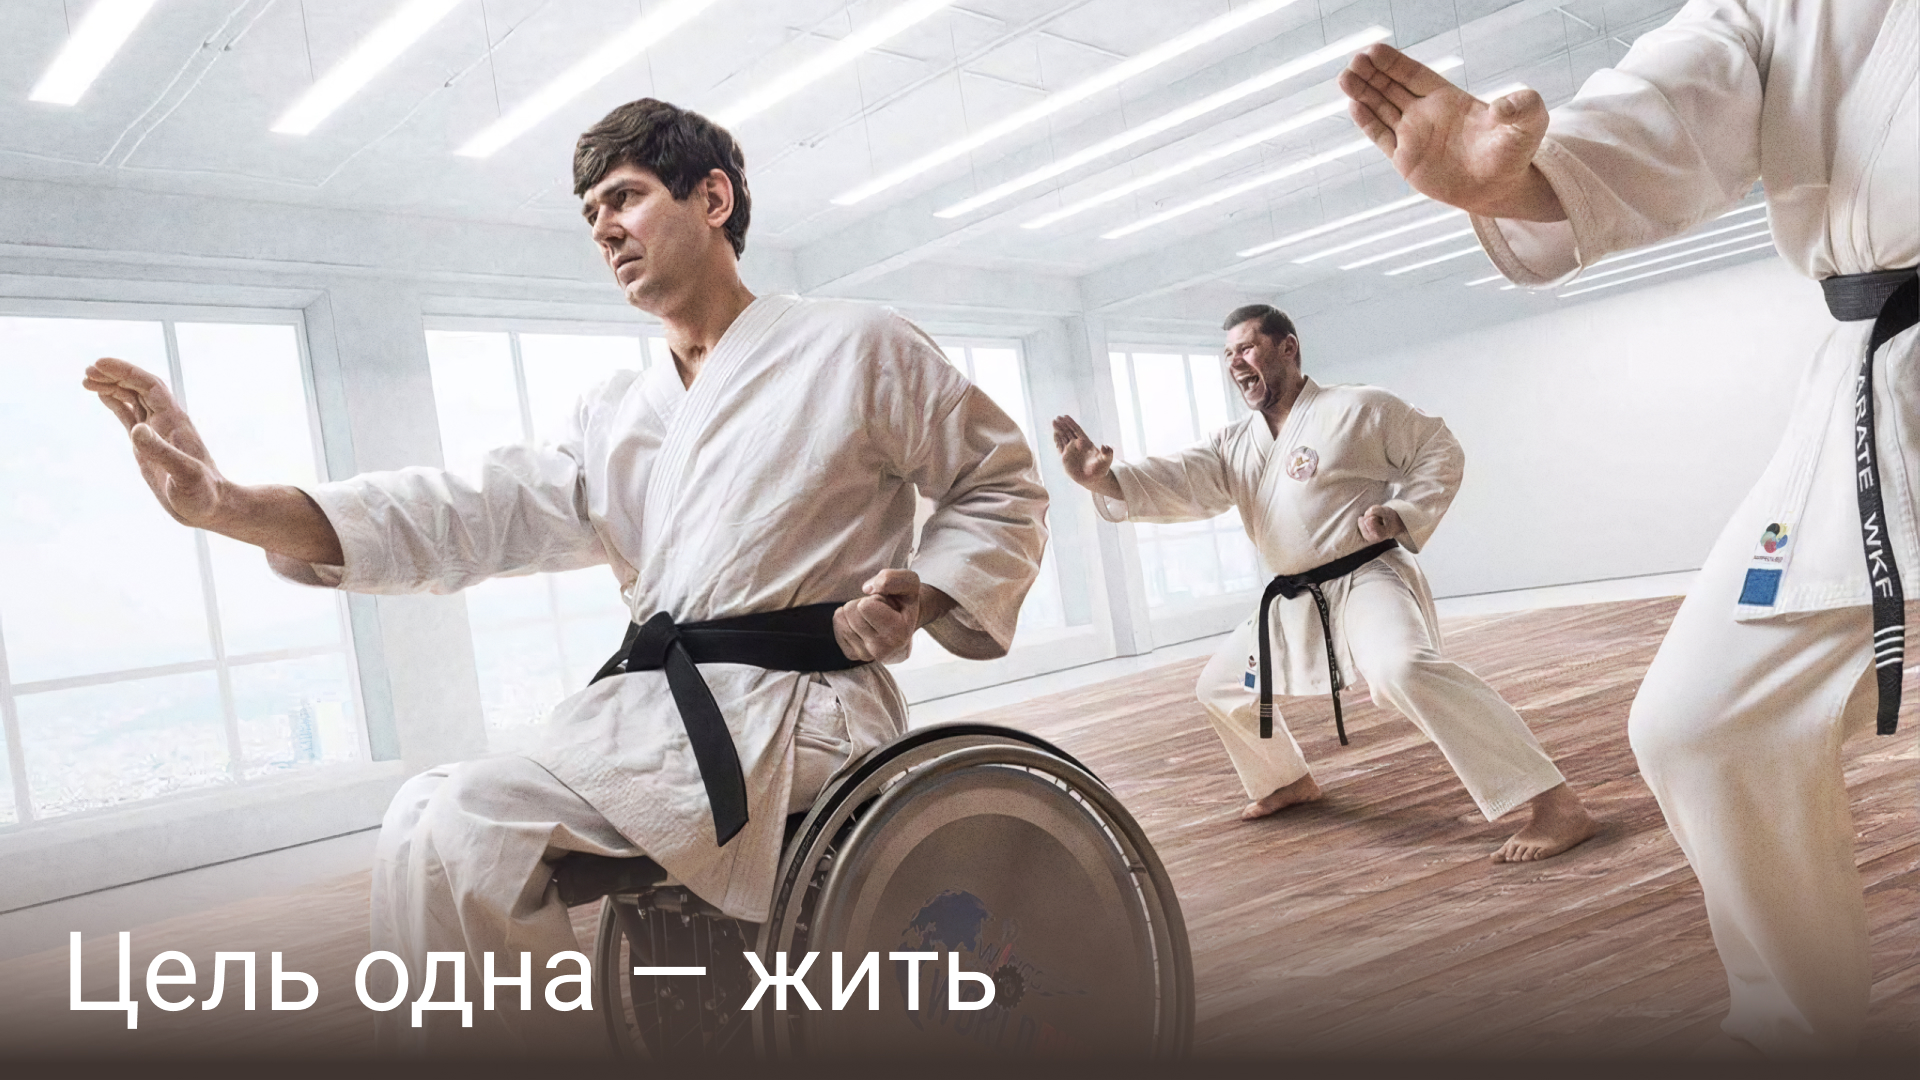 паралимпийская сборная России, карате, Паралимпийские игры